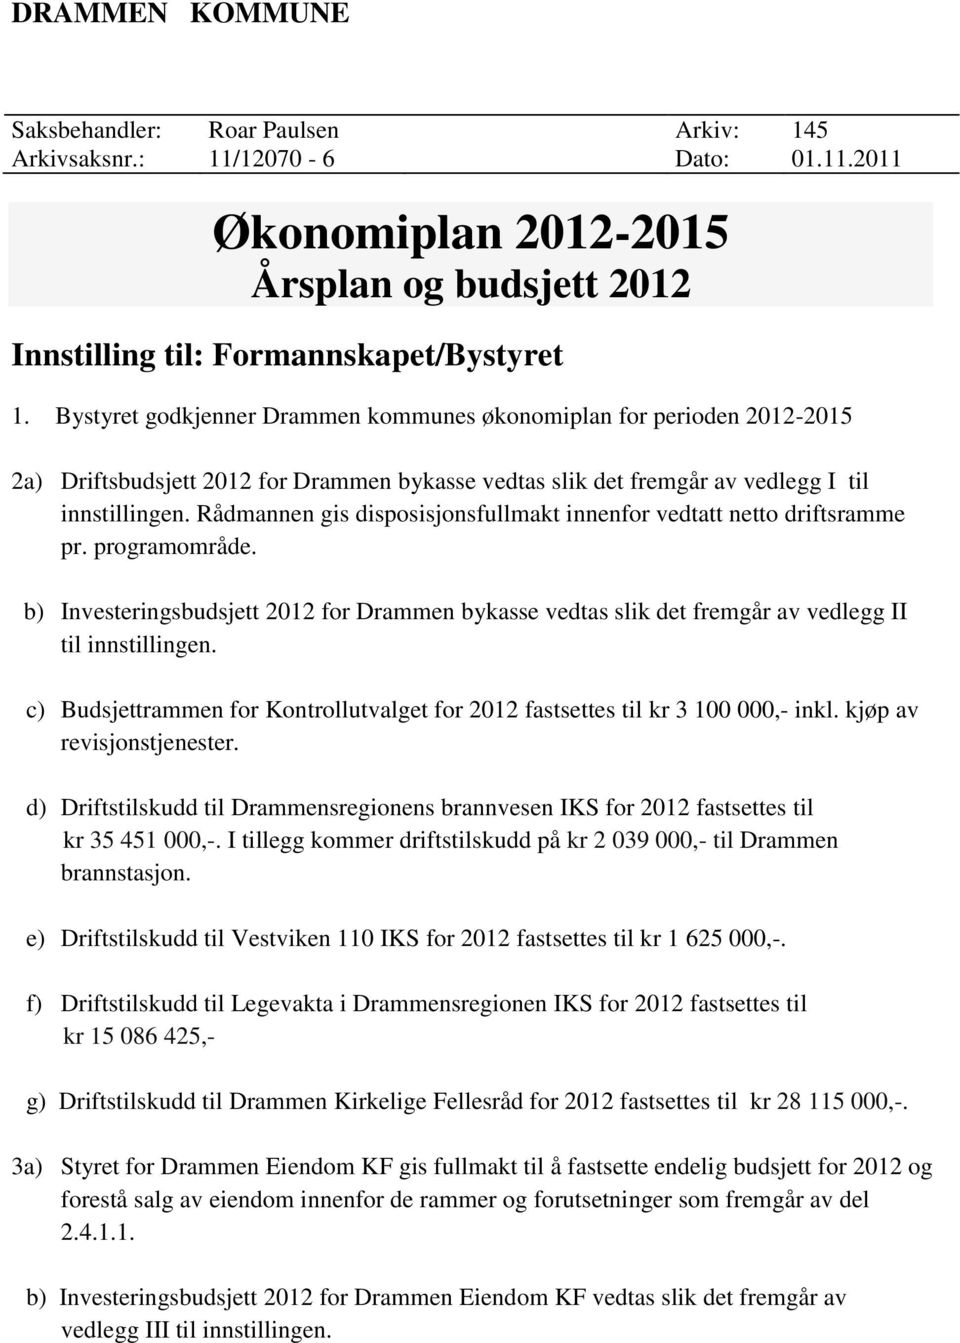 Rådmannen gis disposisjonsfullmakt innenfor vedtatt netto driftsramme pr. programområde. b) Investeringsbudsjett 2012 for Drammen bykasse vedtas slik det fremgår av vedlegg II til innstillingen.